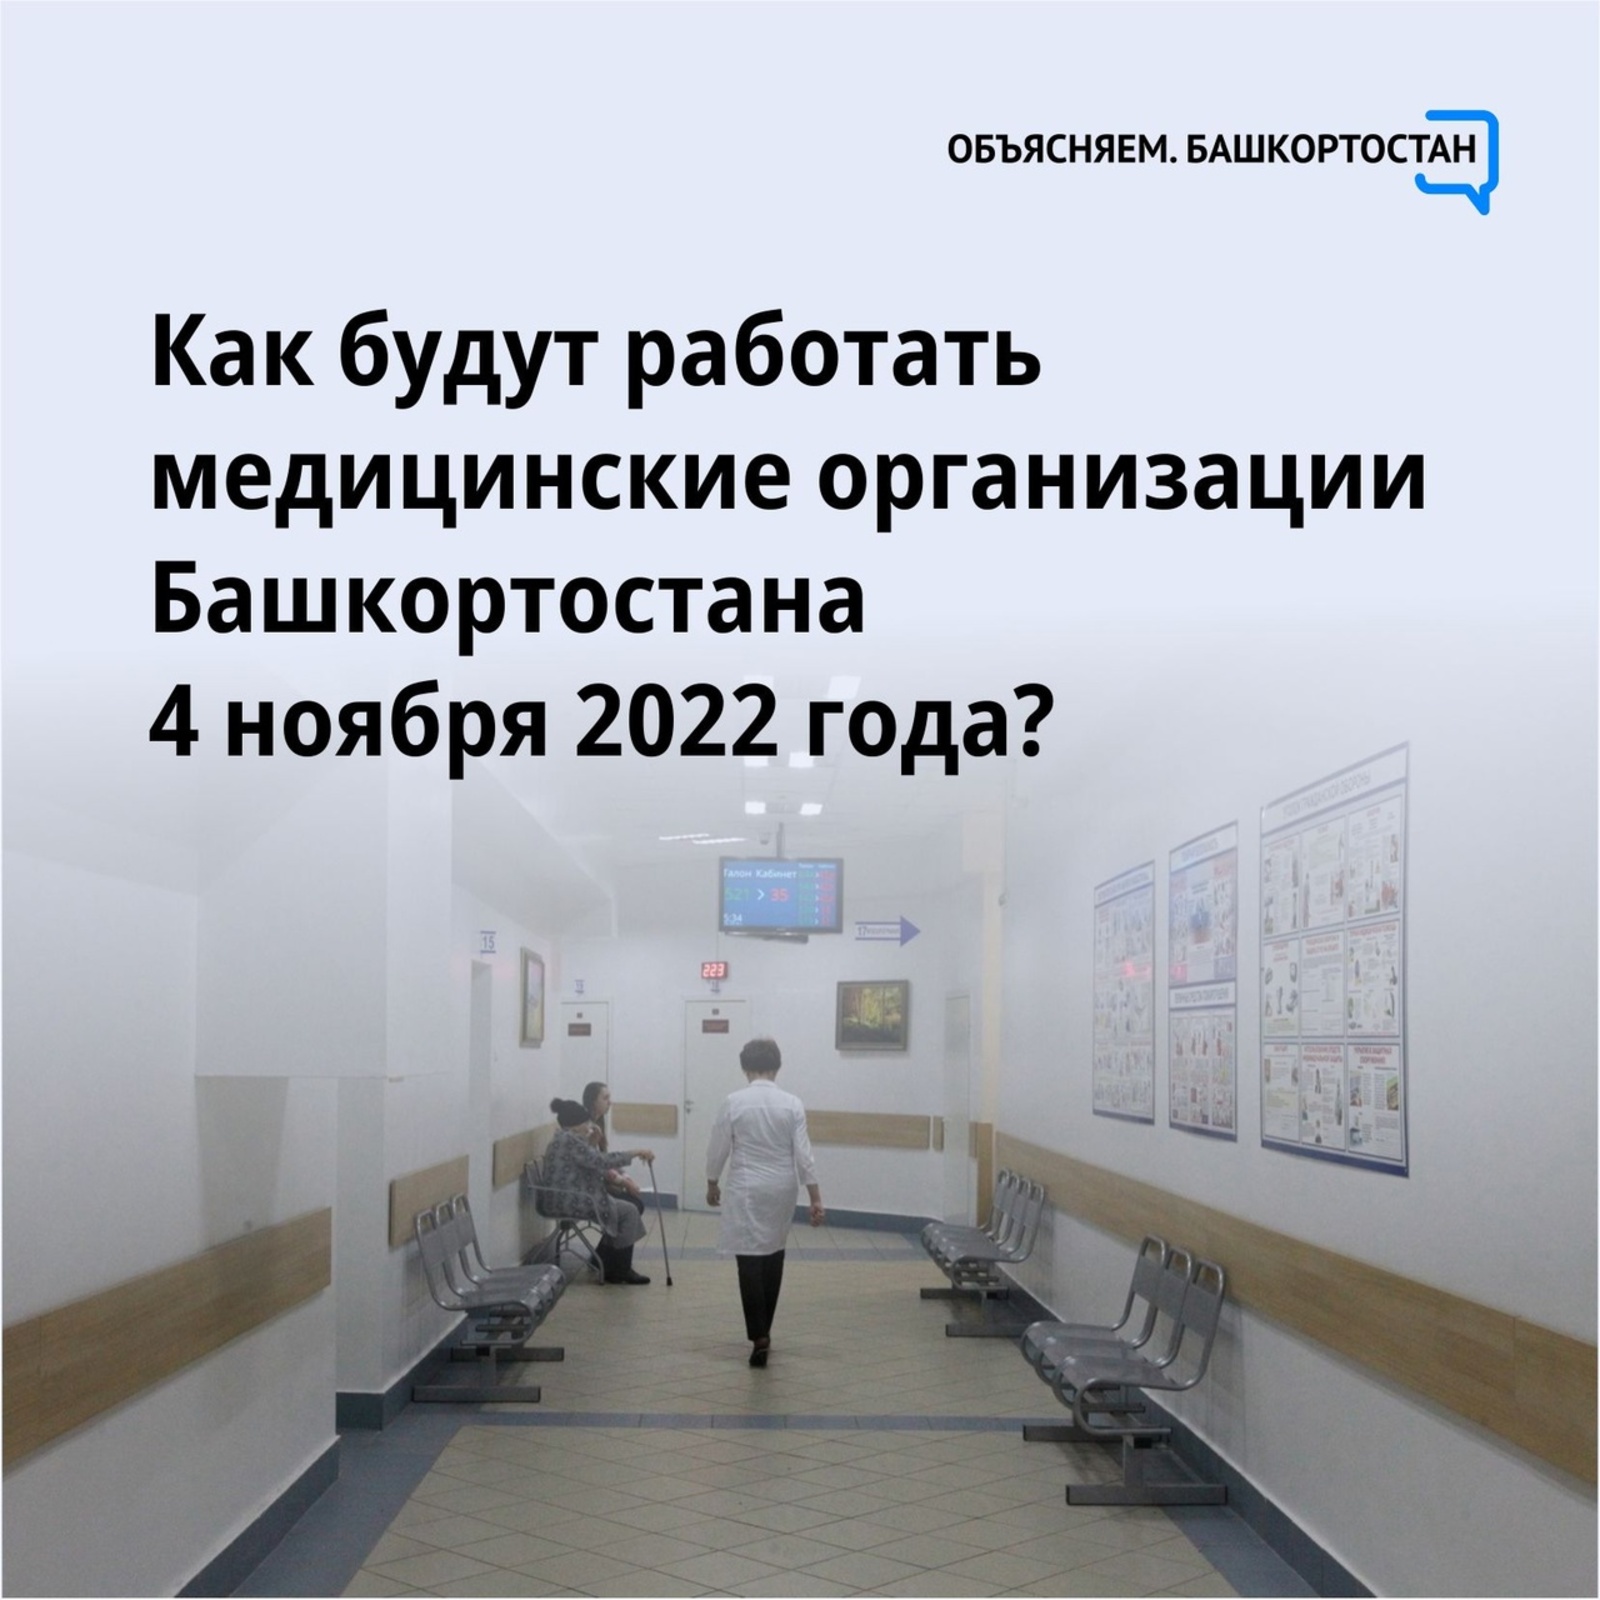 Работа медорганизаций Башкортостана 4 ноября 2022 года